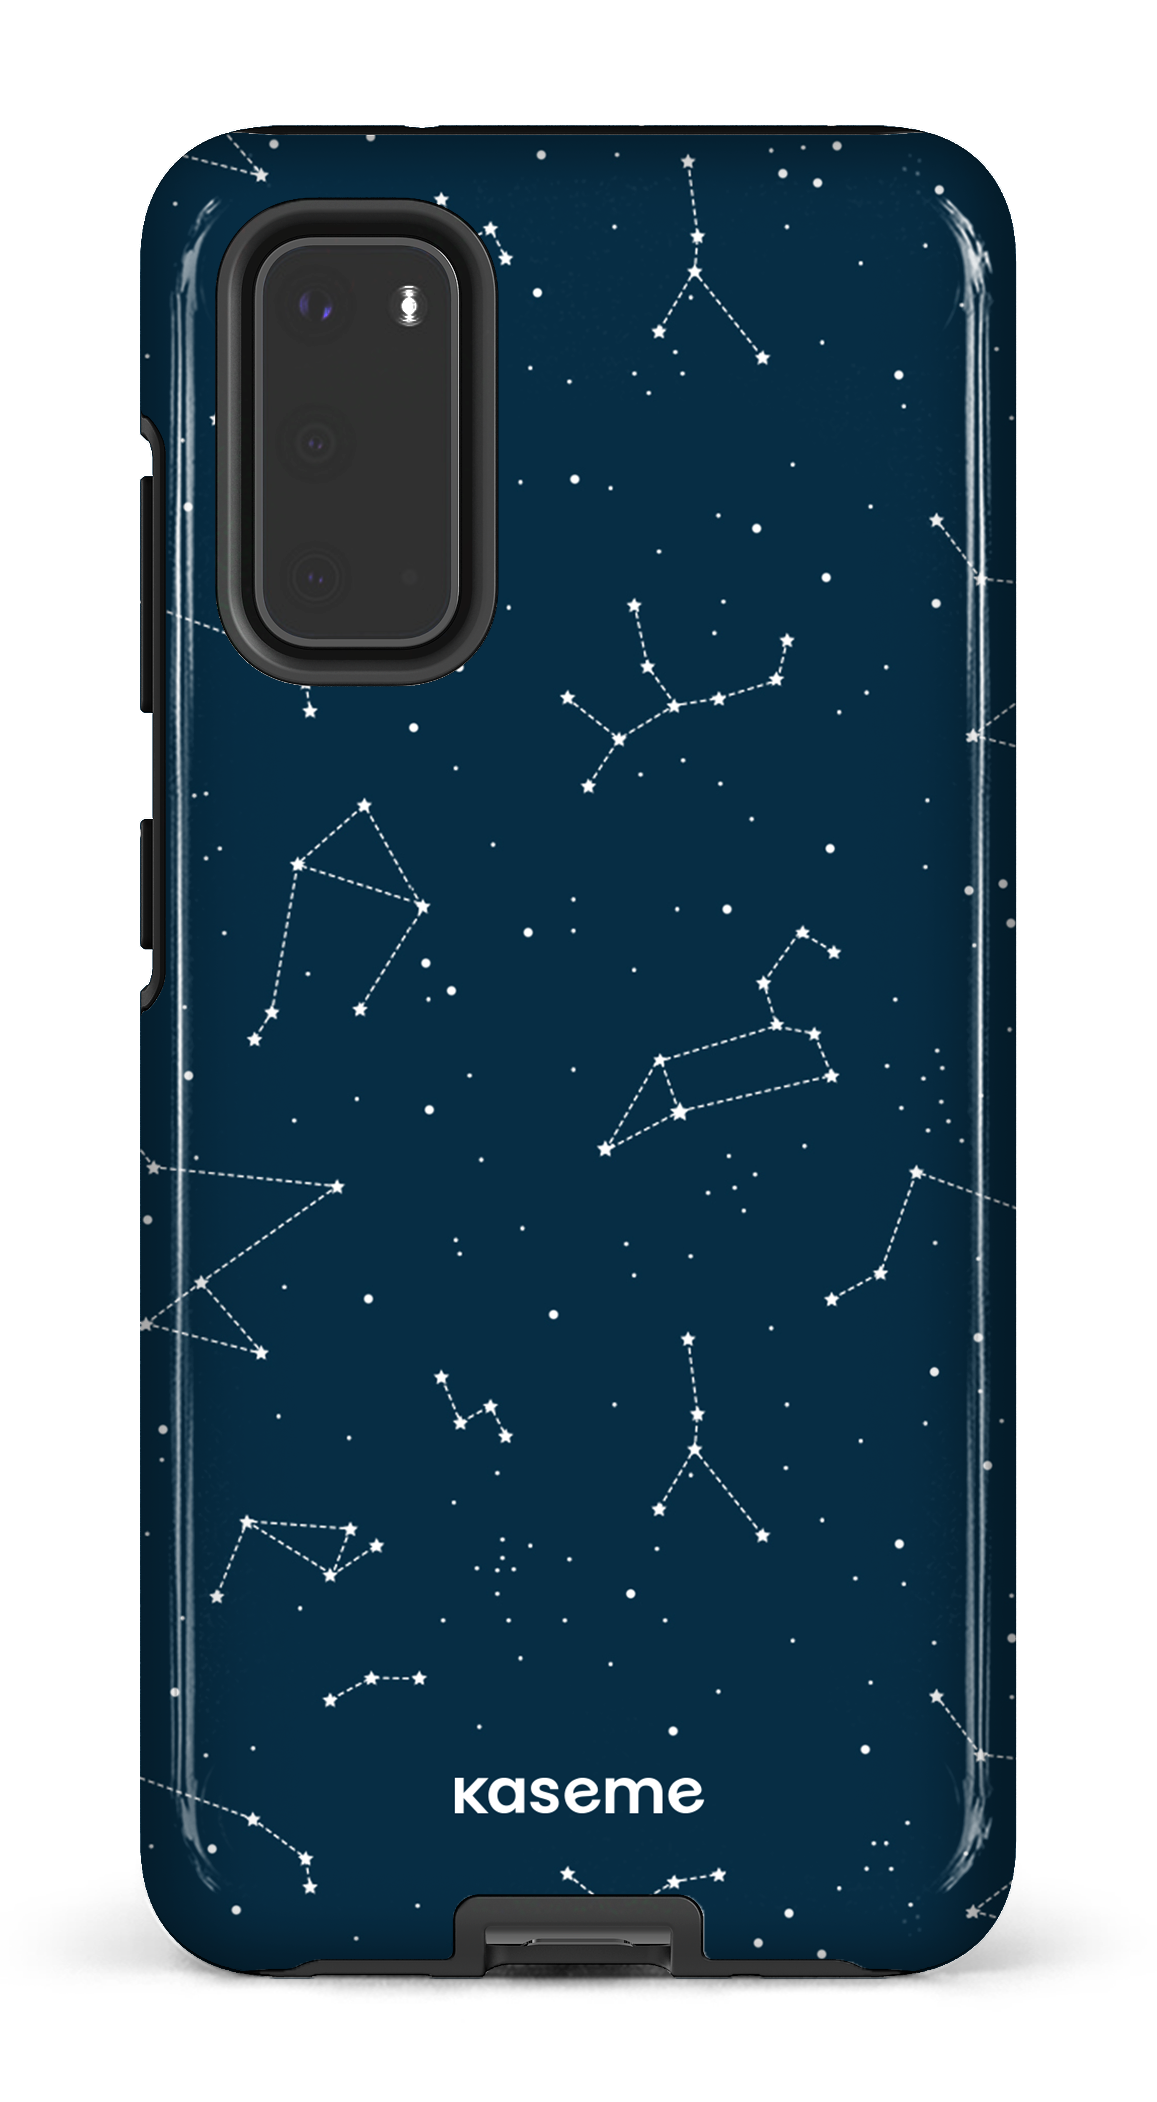 Cosmos - Galaxy S20